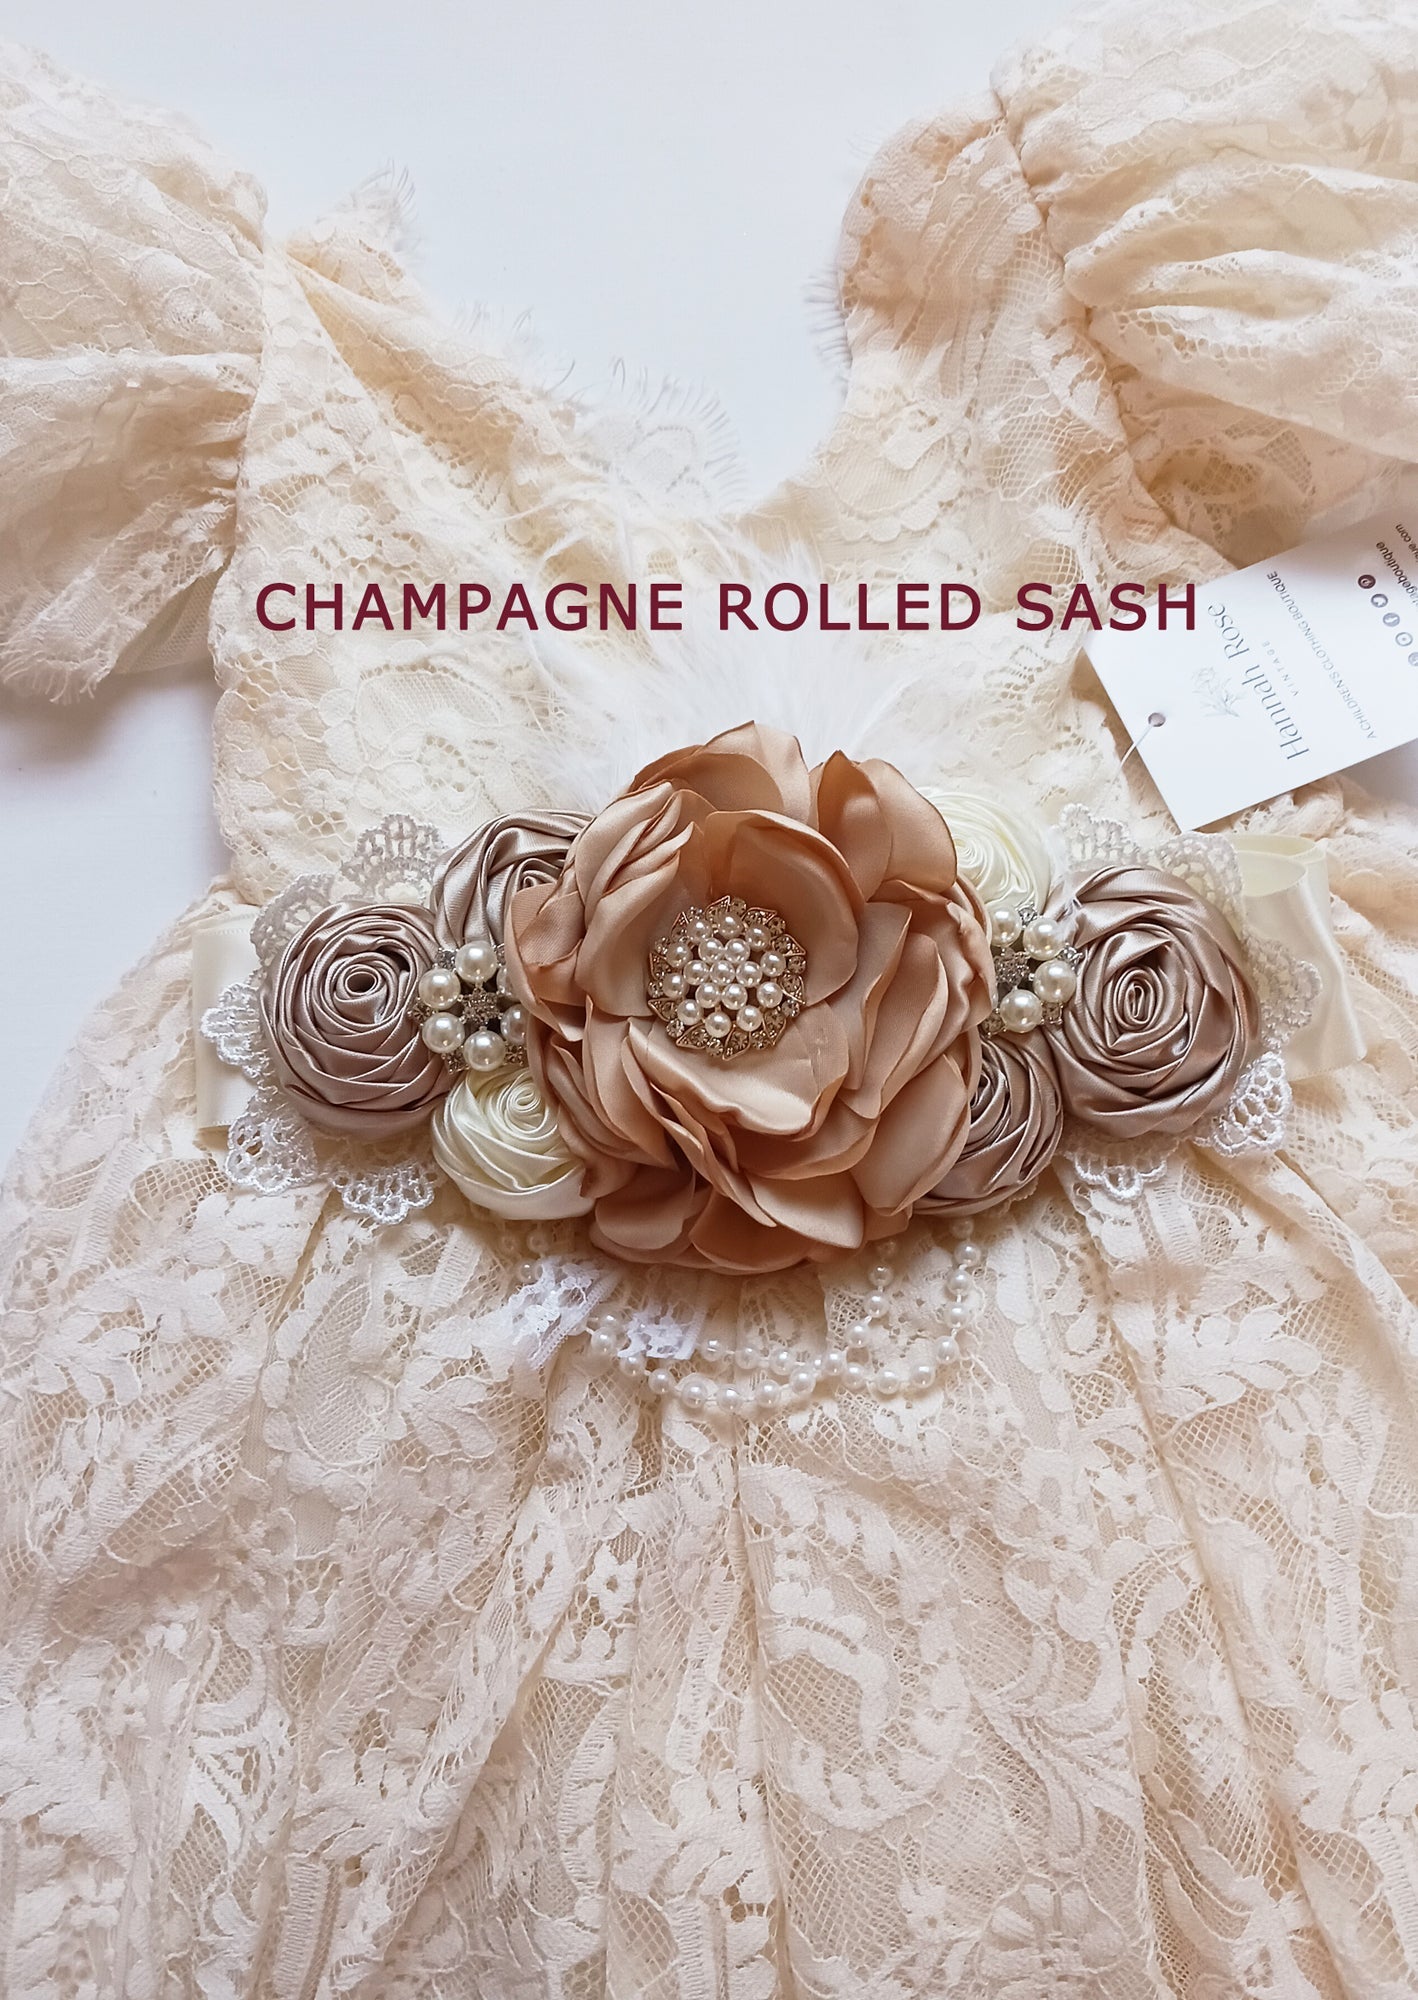 GIRLS - Satin Flower Bridal Sash Belt Champagne - Hannah Rose Vintage Boutique